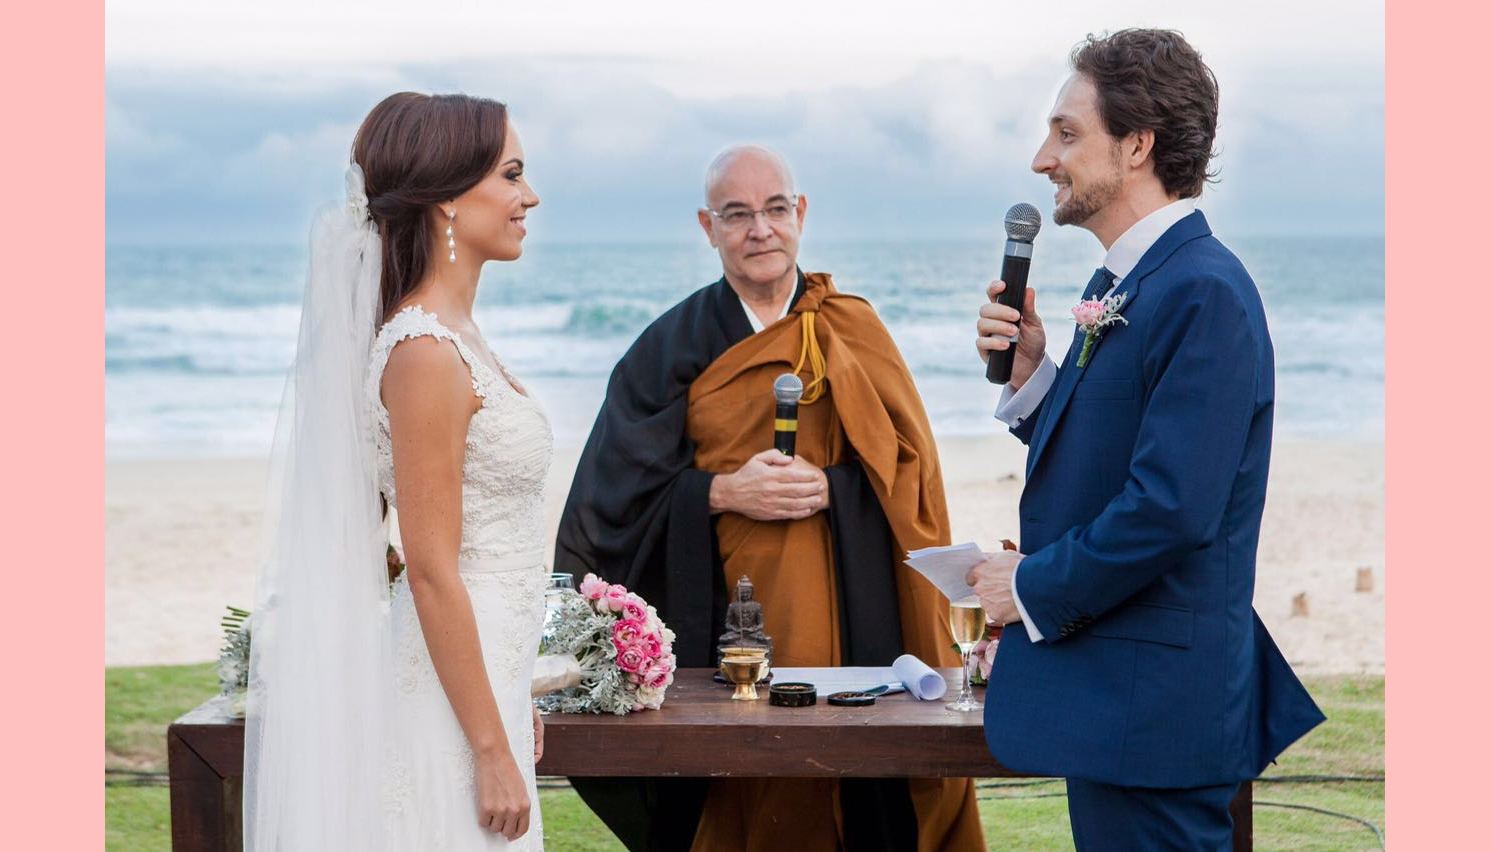 Cerimônia: Casamento Budista